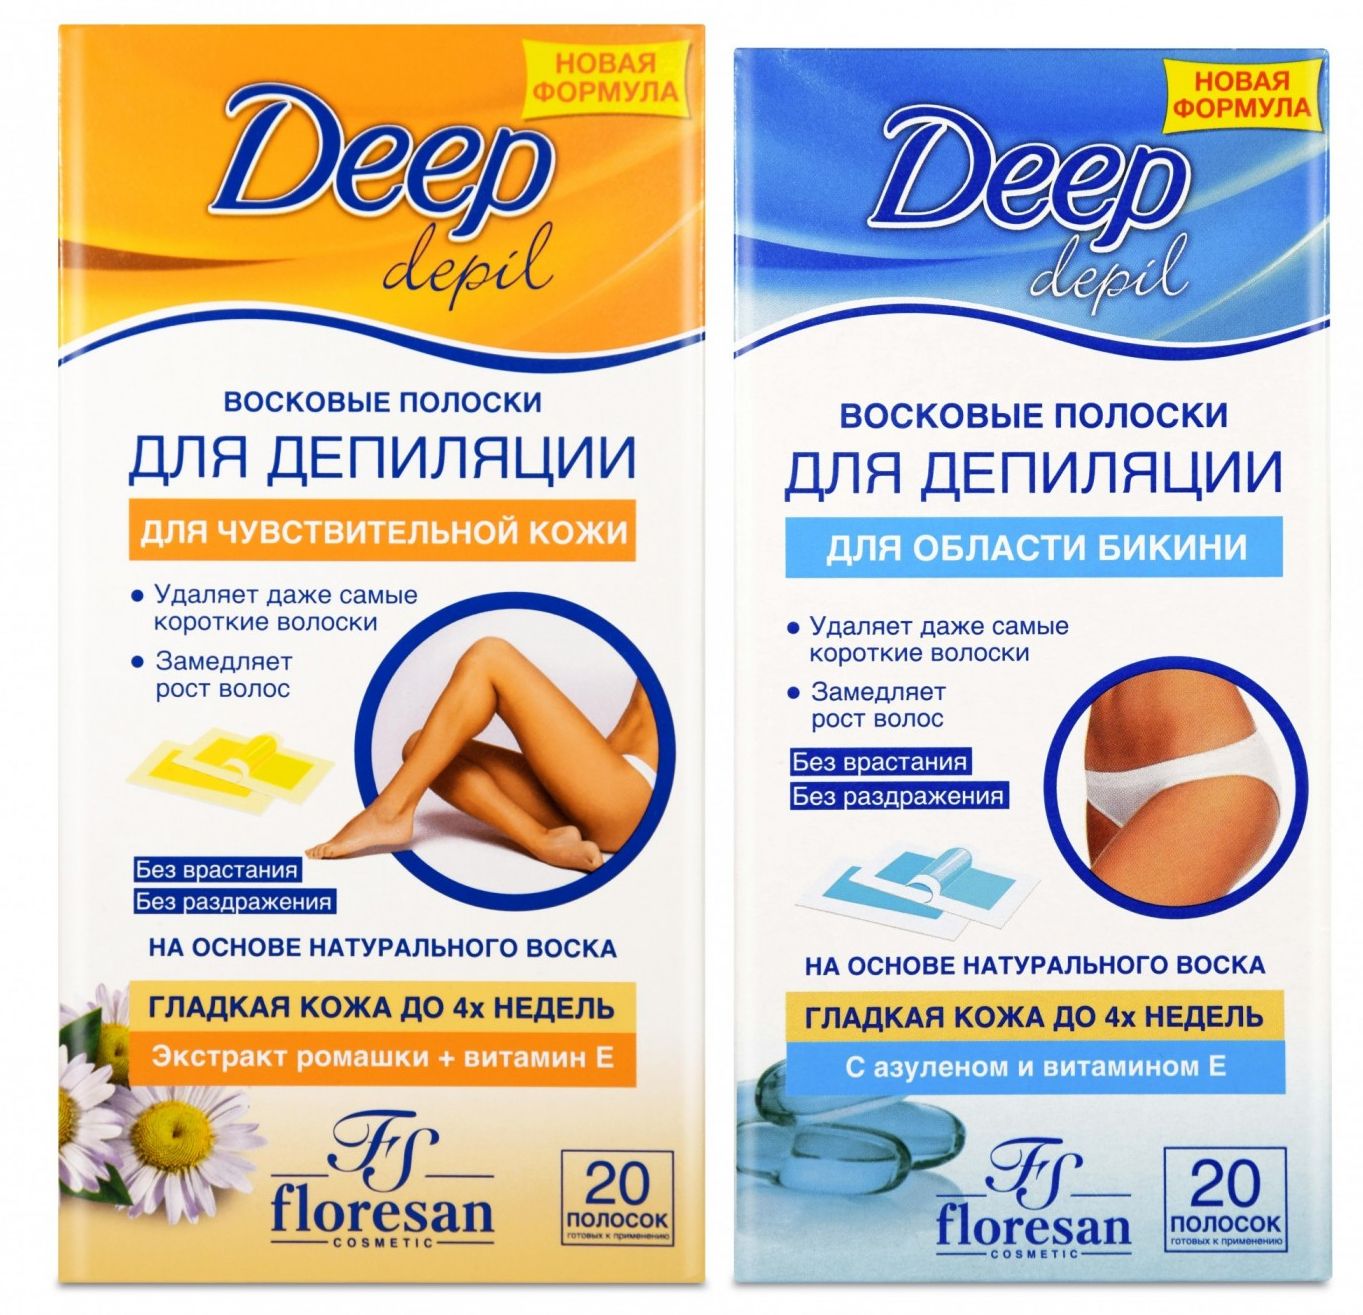 Восковые полоски Floresan Deep Depil для чувствительной кожи и области бикини 2 шт восковые полоски floresan deep depil